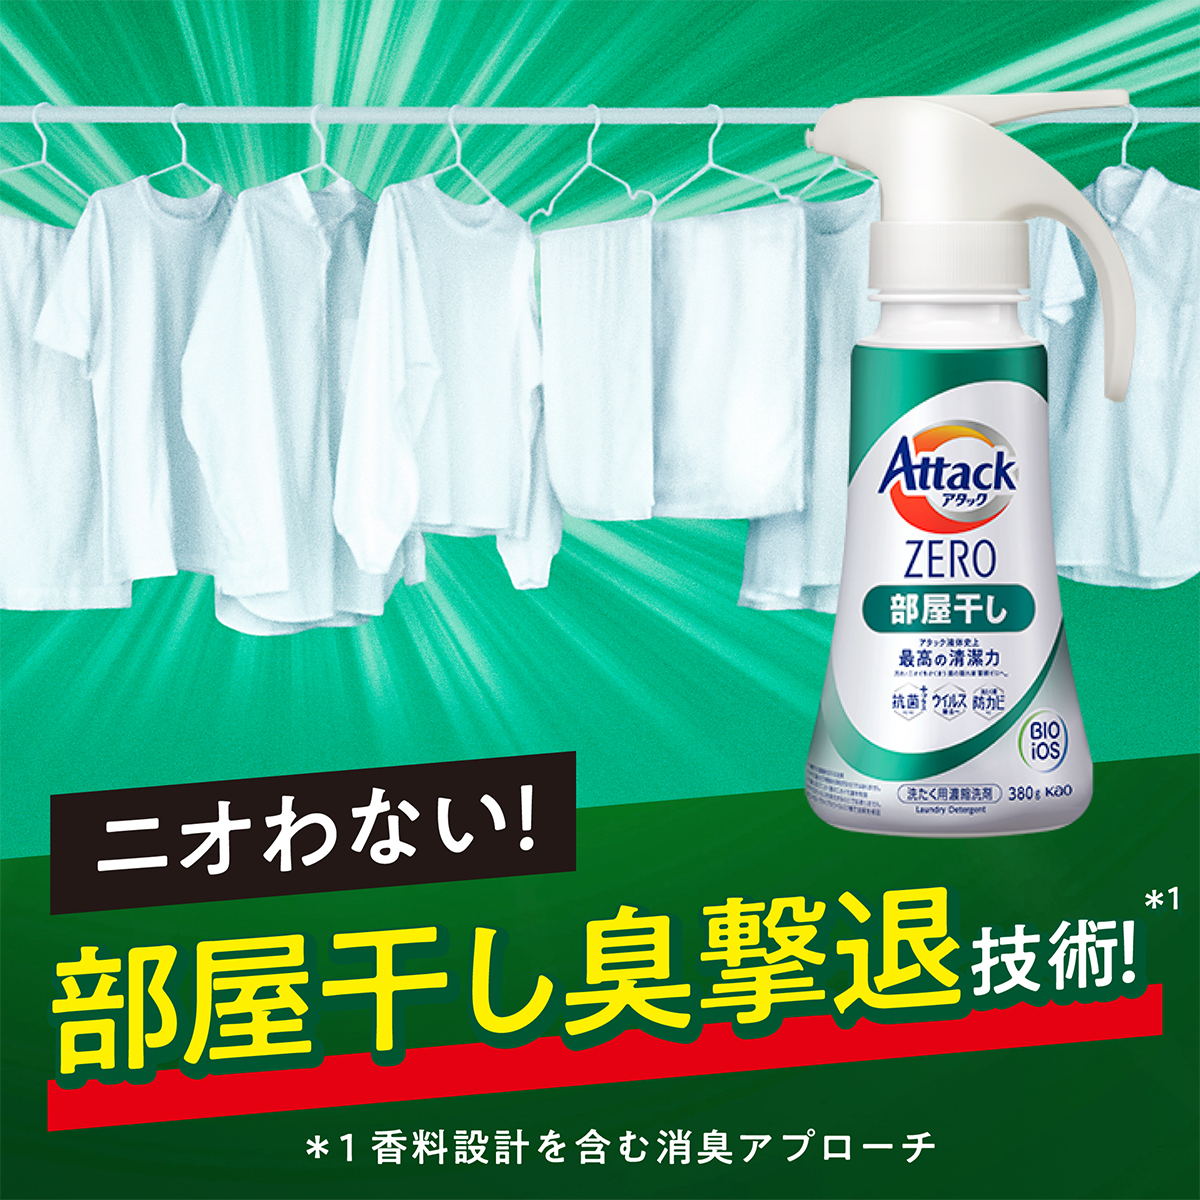 アタックZERO Attack ZERO 洗濯洗剤 部屋干し 詰め替え 超特大 1540g×2袋